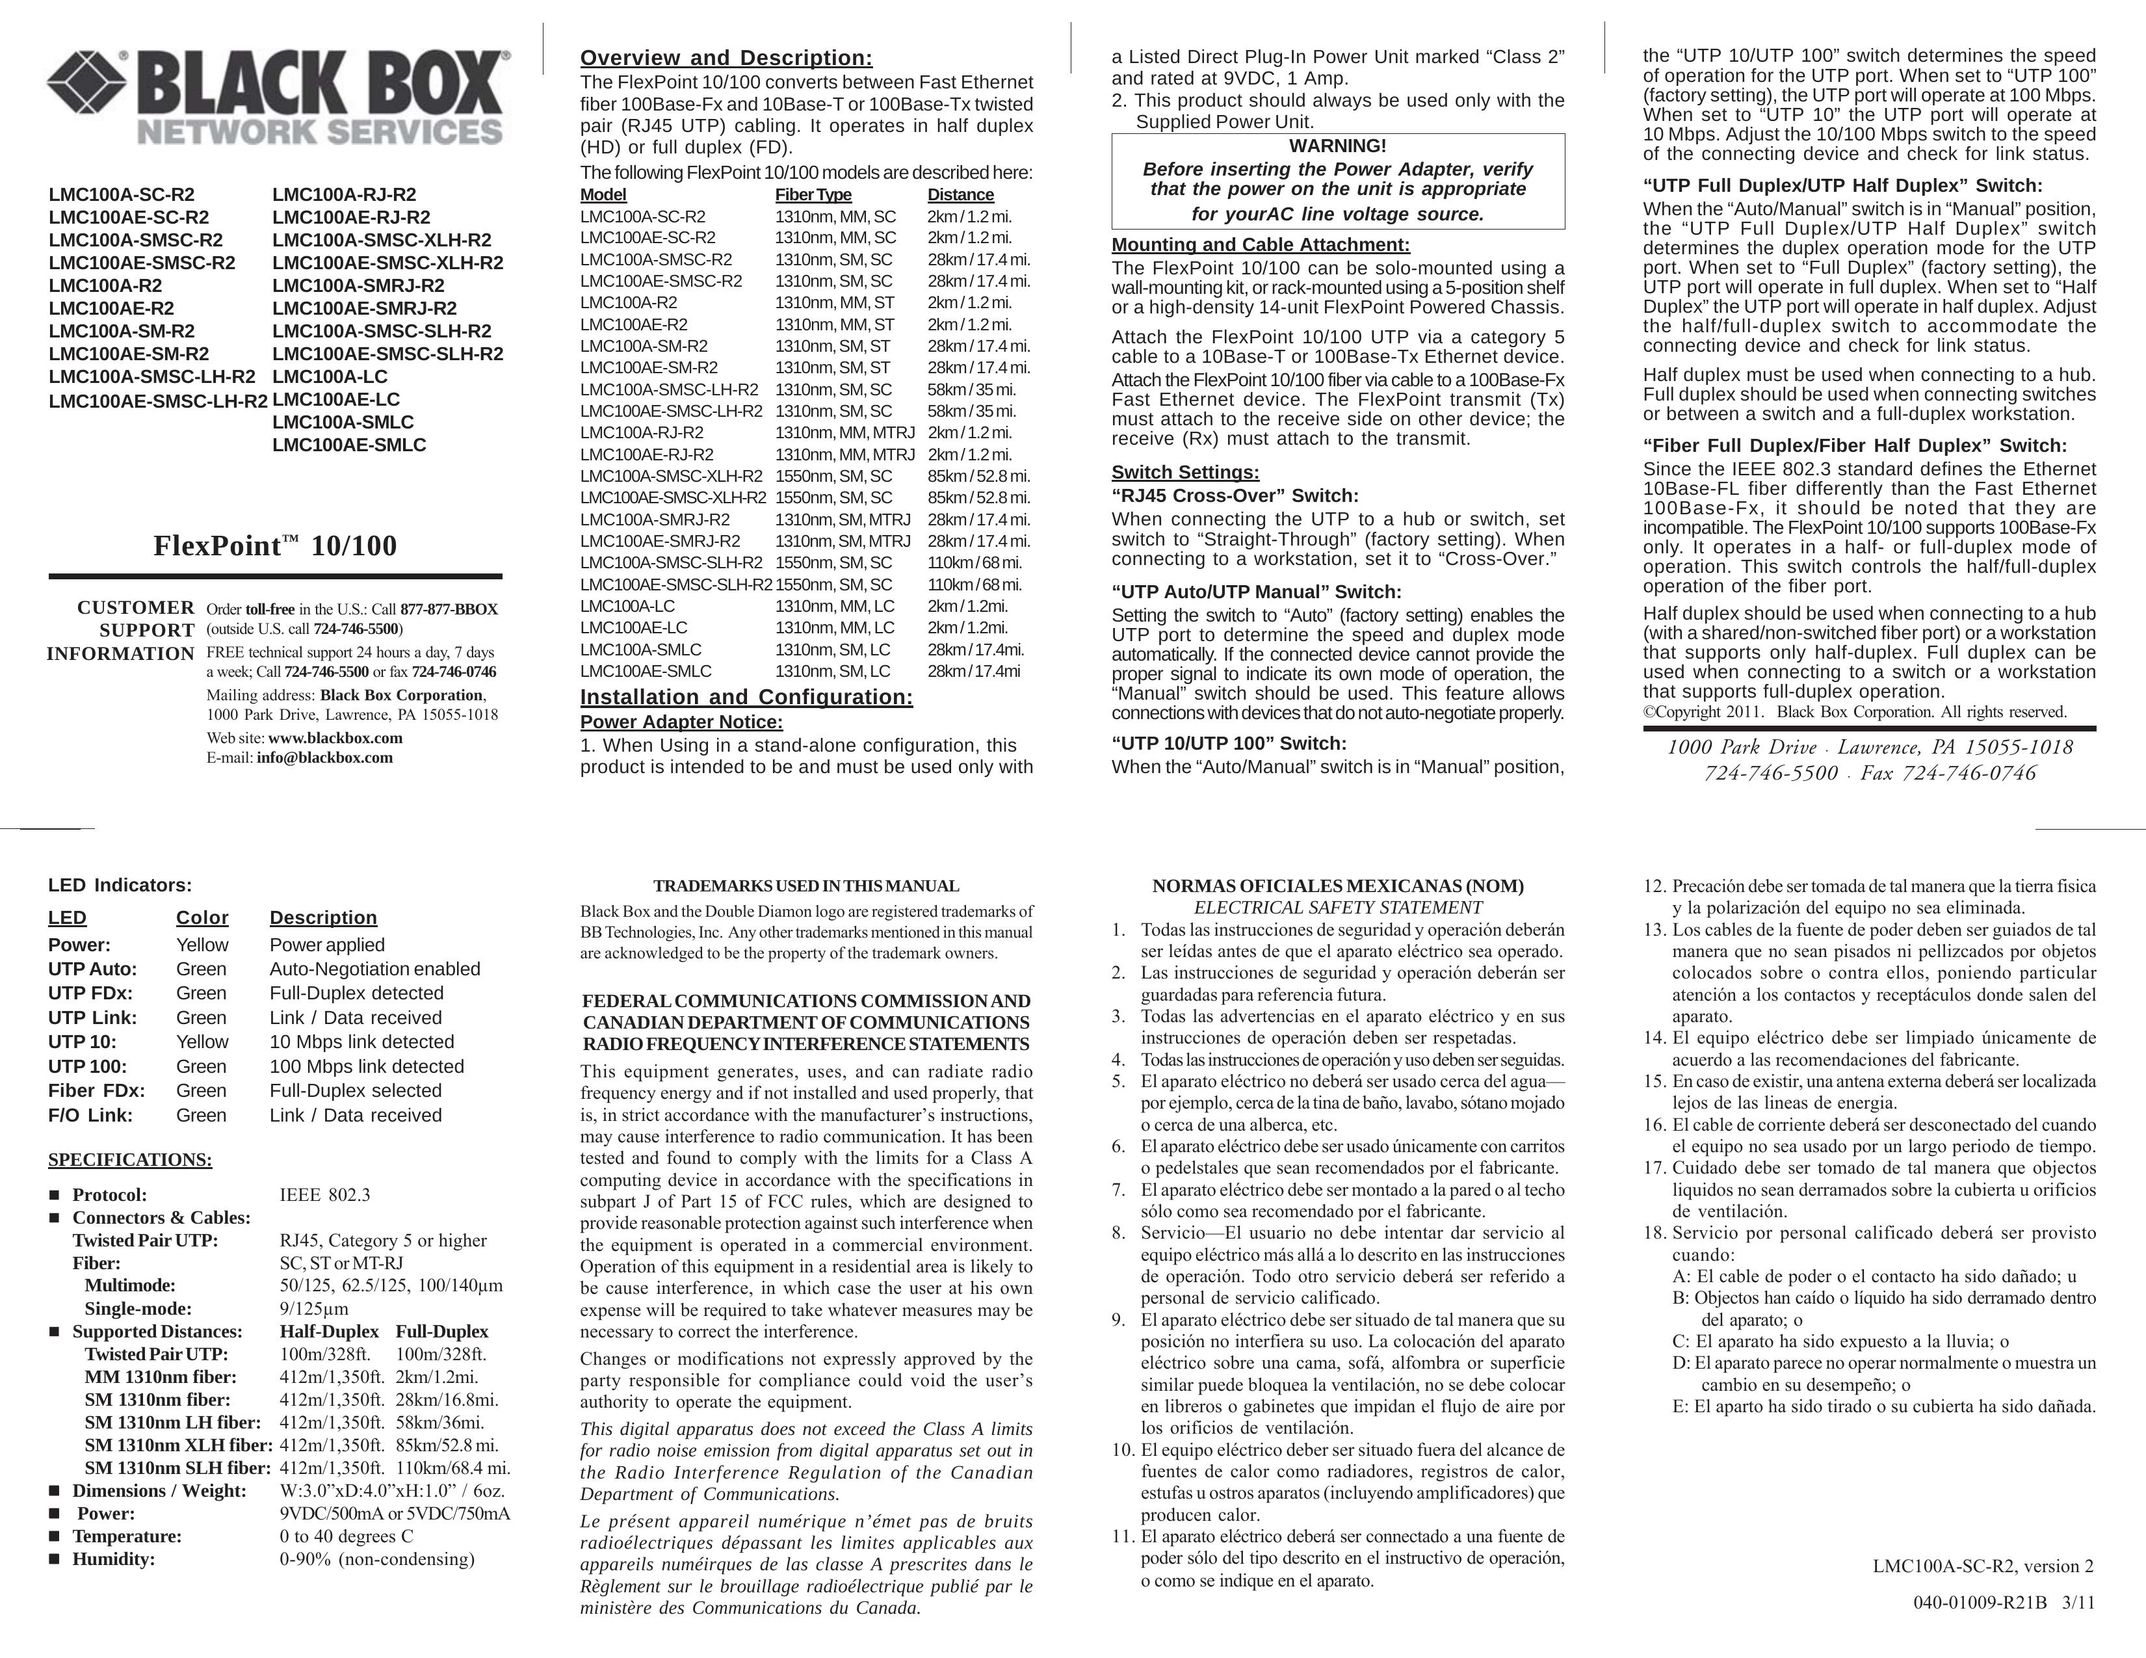 Black Box LMC100AE-RJ-R2 Network Cables User Manual